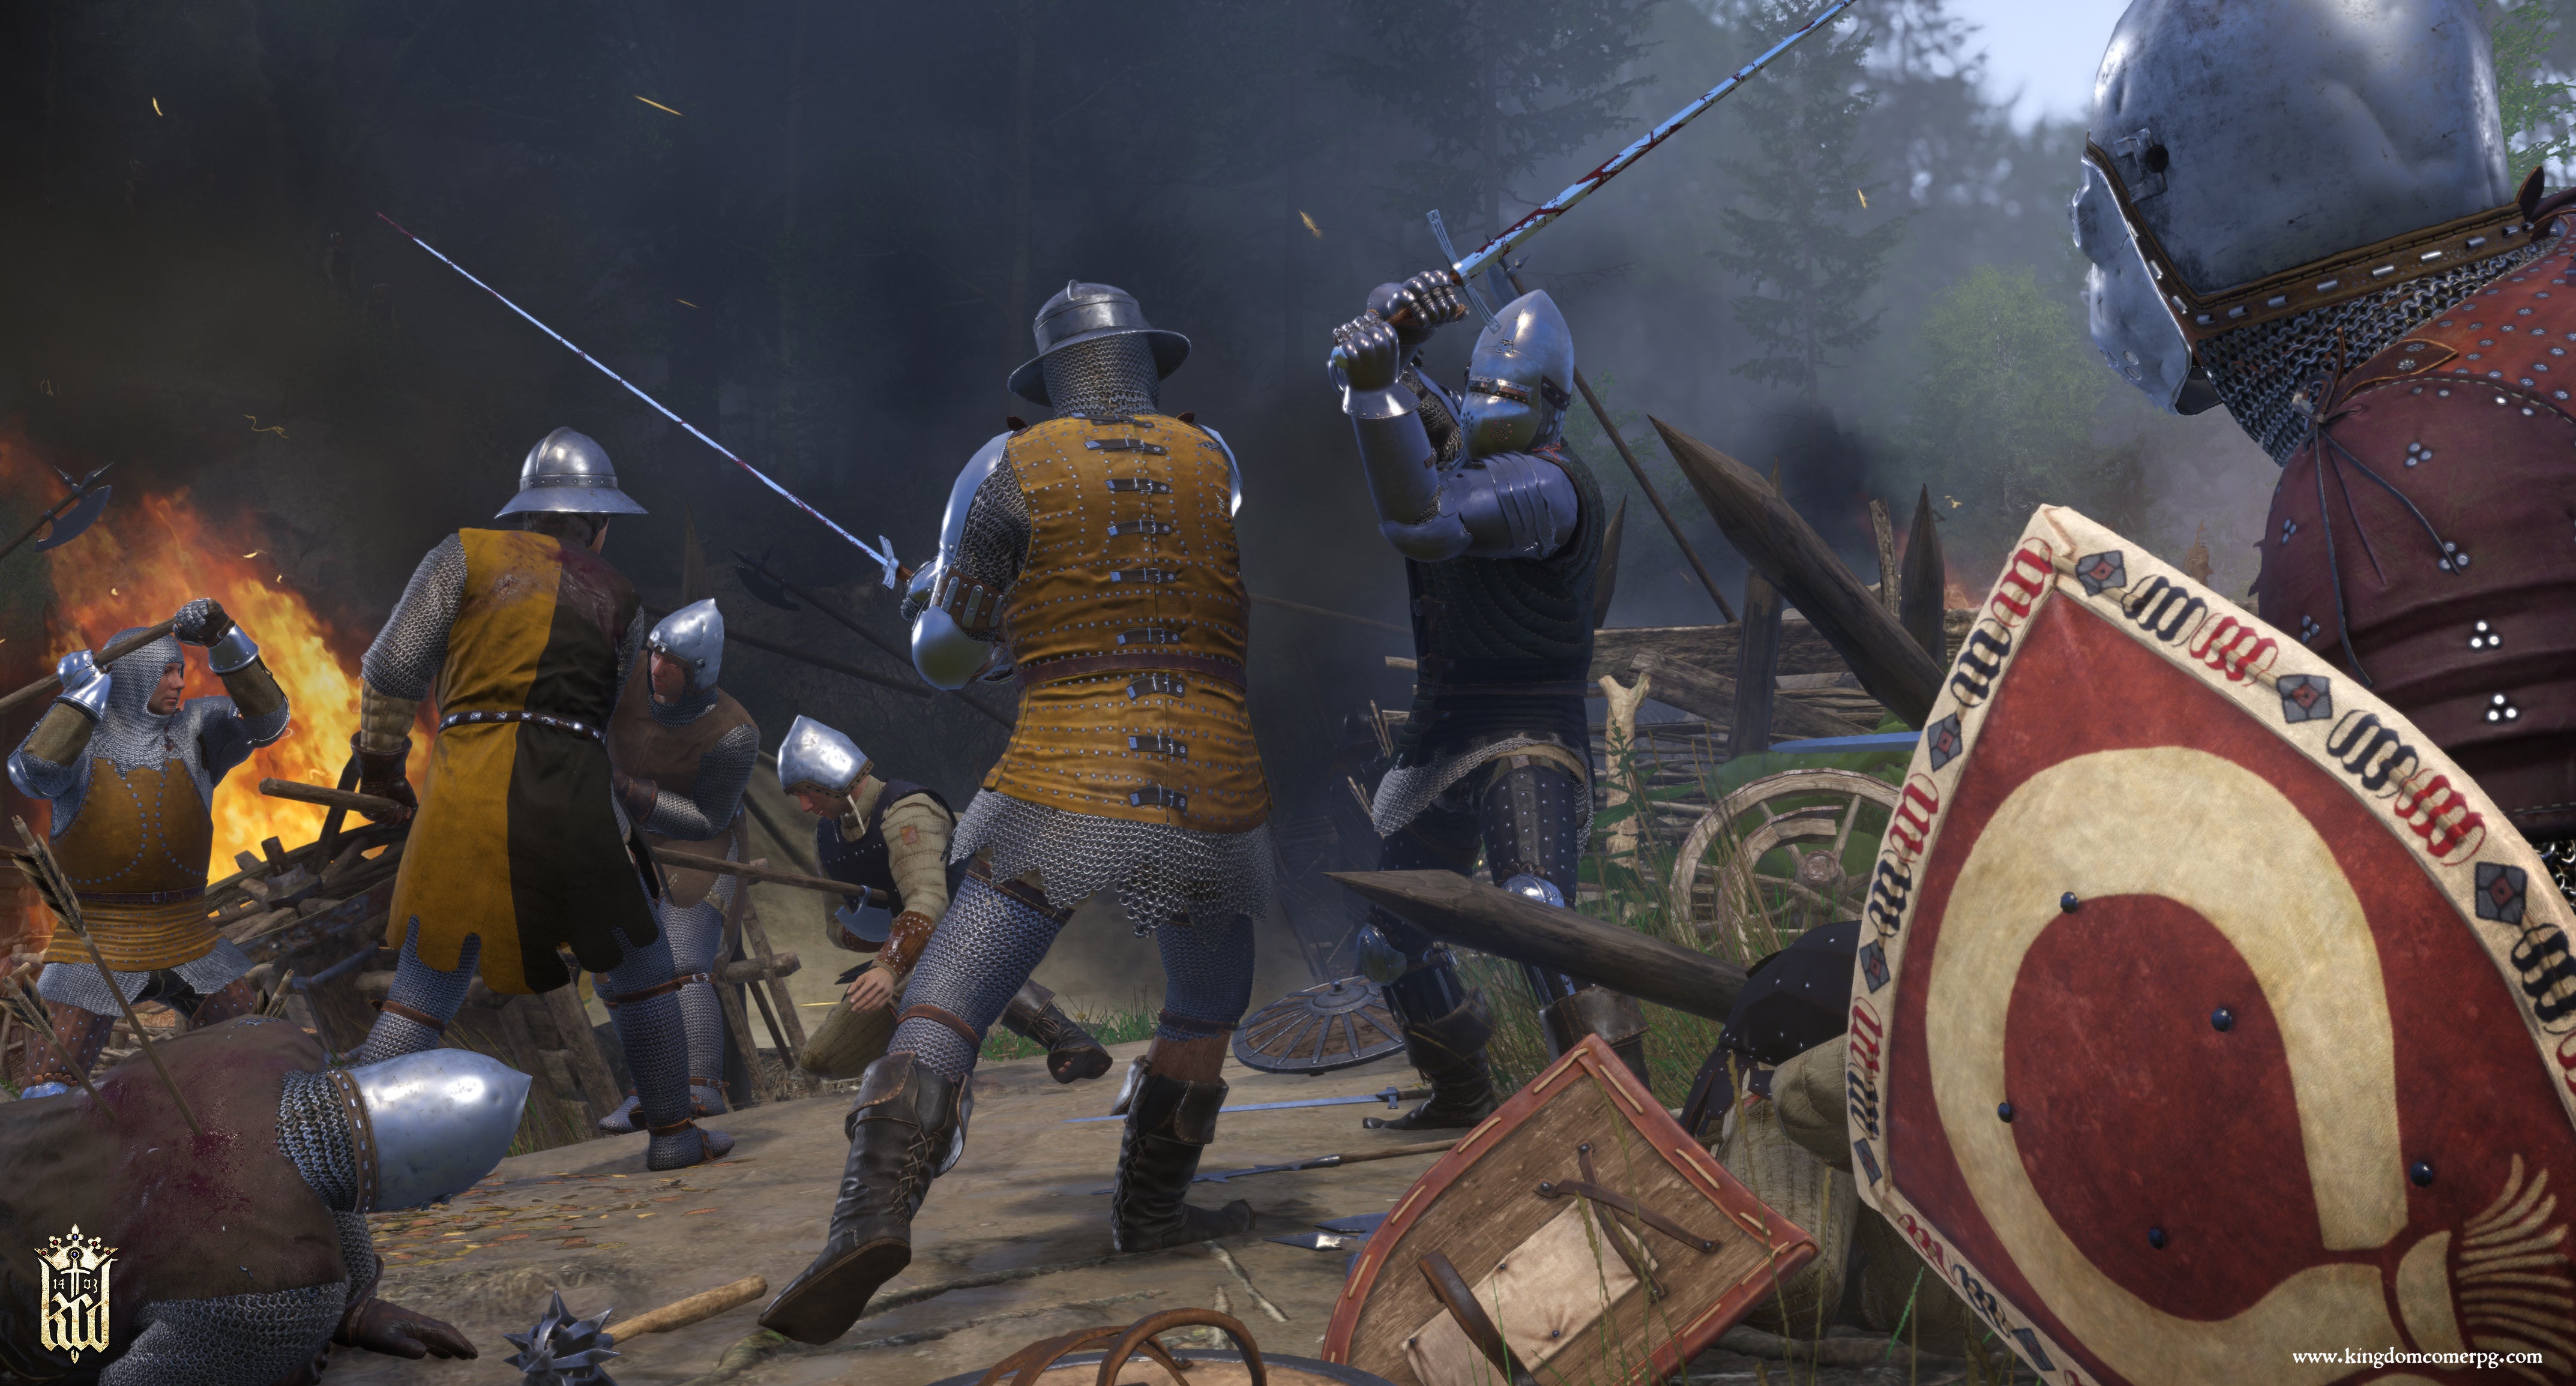 Image for Kingdom Come: Deliverance - Warhorse reveals Amorous Adventures, Tournament DLC details